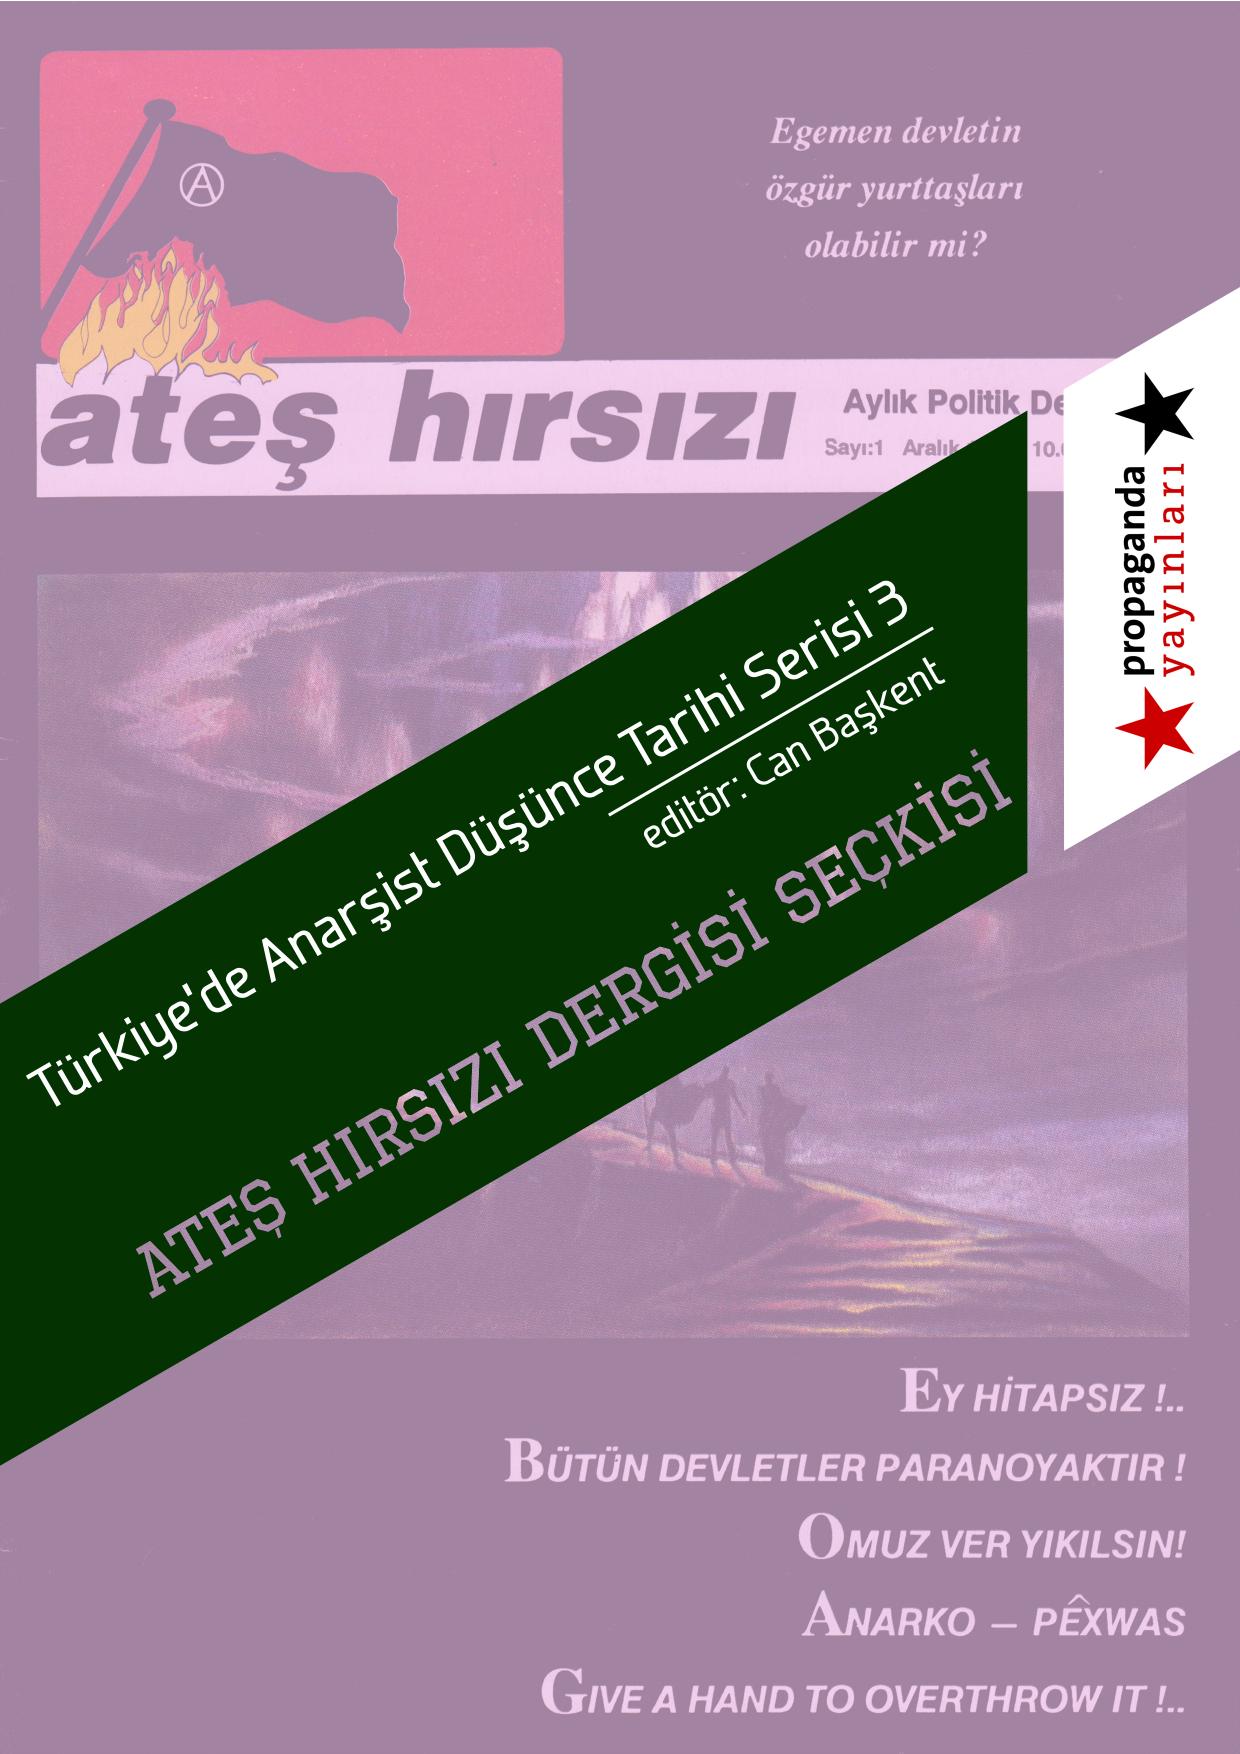 Ateş Hırsızı Dergisi Seçkisi - Türkiye'de Anarşist Düşünce Tarihi Serisi